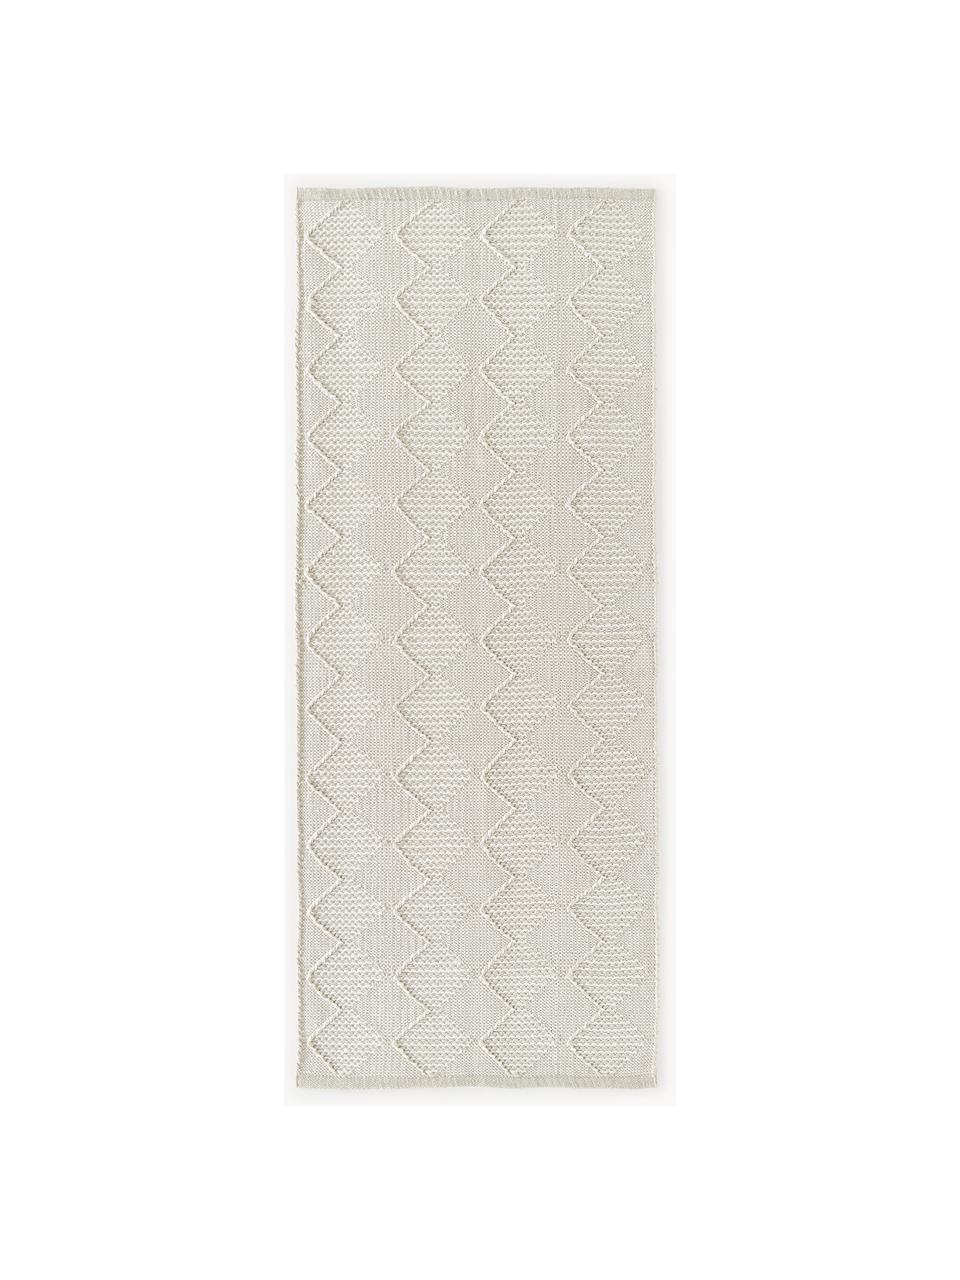 Tapis d'extérieur avec texture en relief Barcelone, 100 % polyester, certifié GRS

Le matériau est certifié STANDARD 100 OEKO-TEX®, 11-62055, Shirley, Beige clair, larg. 80 x long. 200 cm